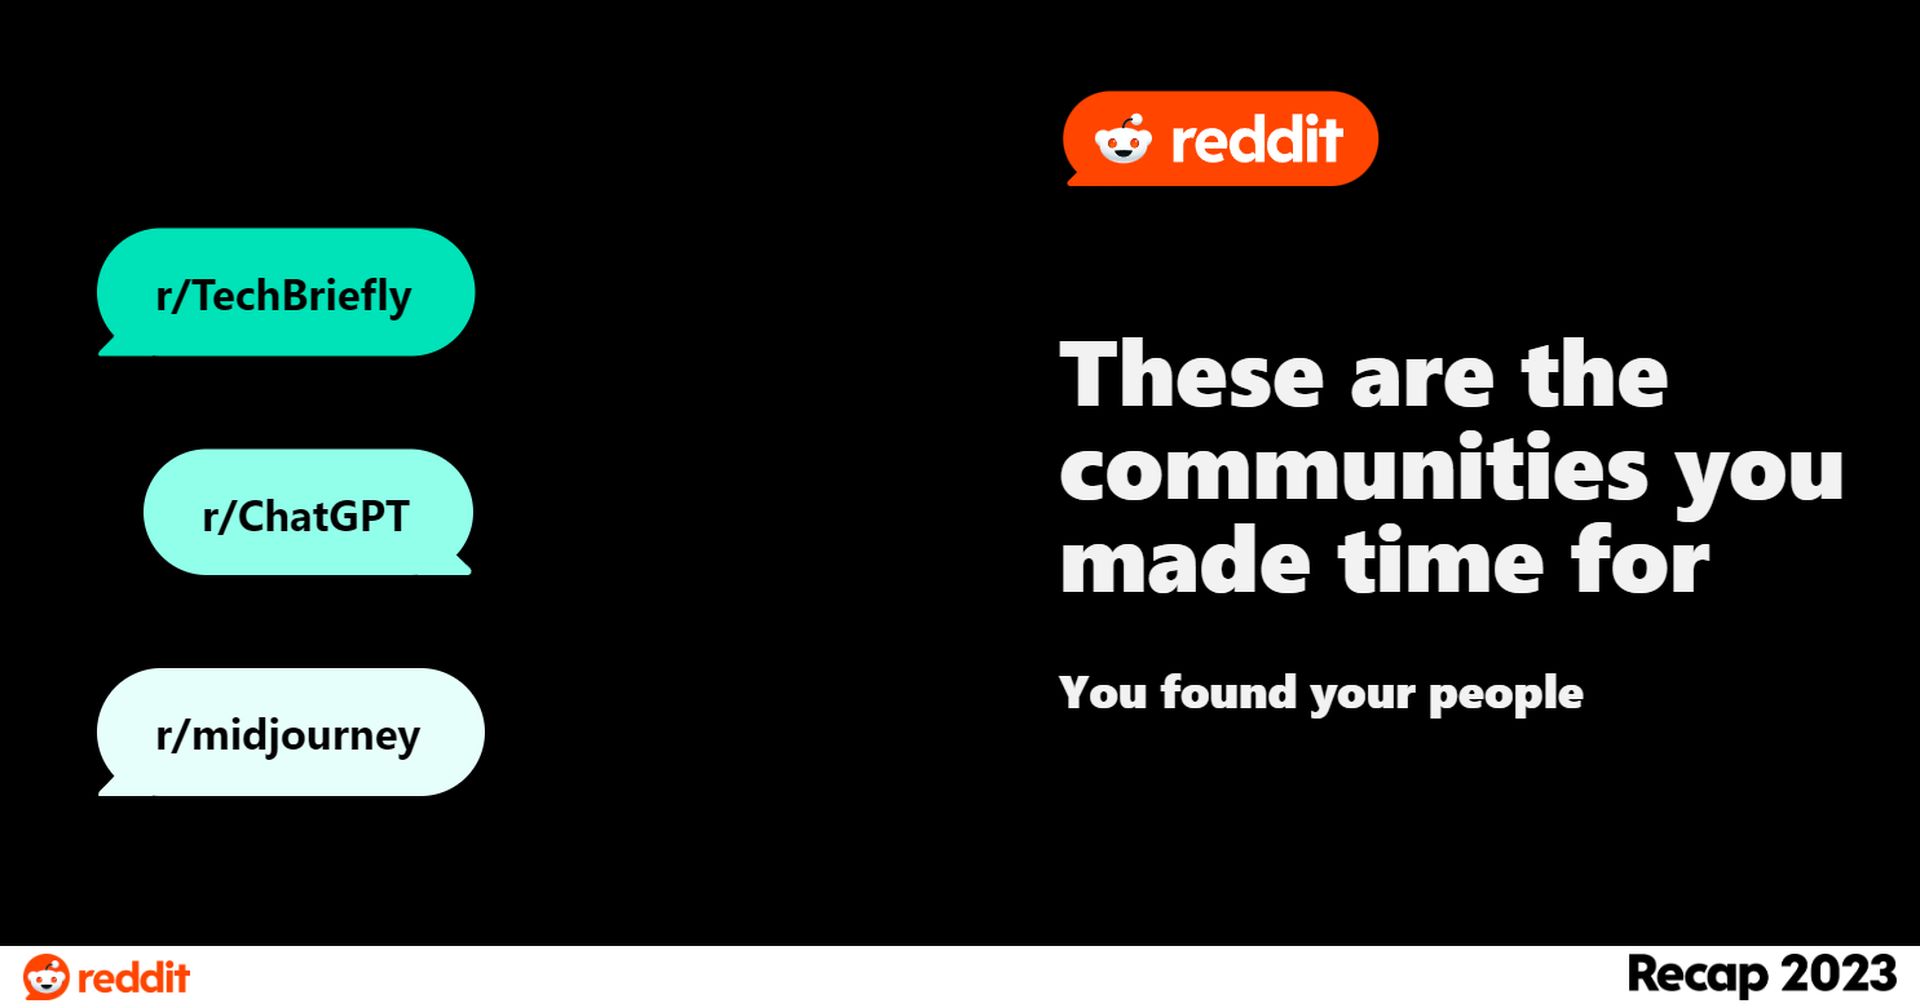 Reddit Recap 2023'e 4 kolay adımda nasıl ulaşılır? Benzersiz içgörüleri, toplulukta öne çıkanları ve unutulmaz anları ortaya çıkarın. Şimdi keşfedin!